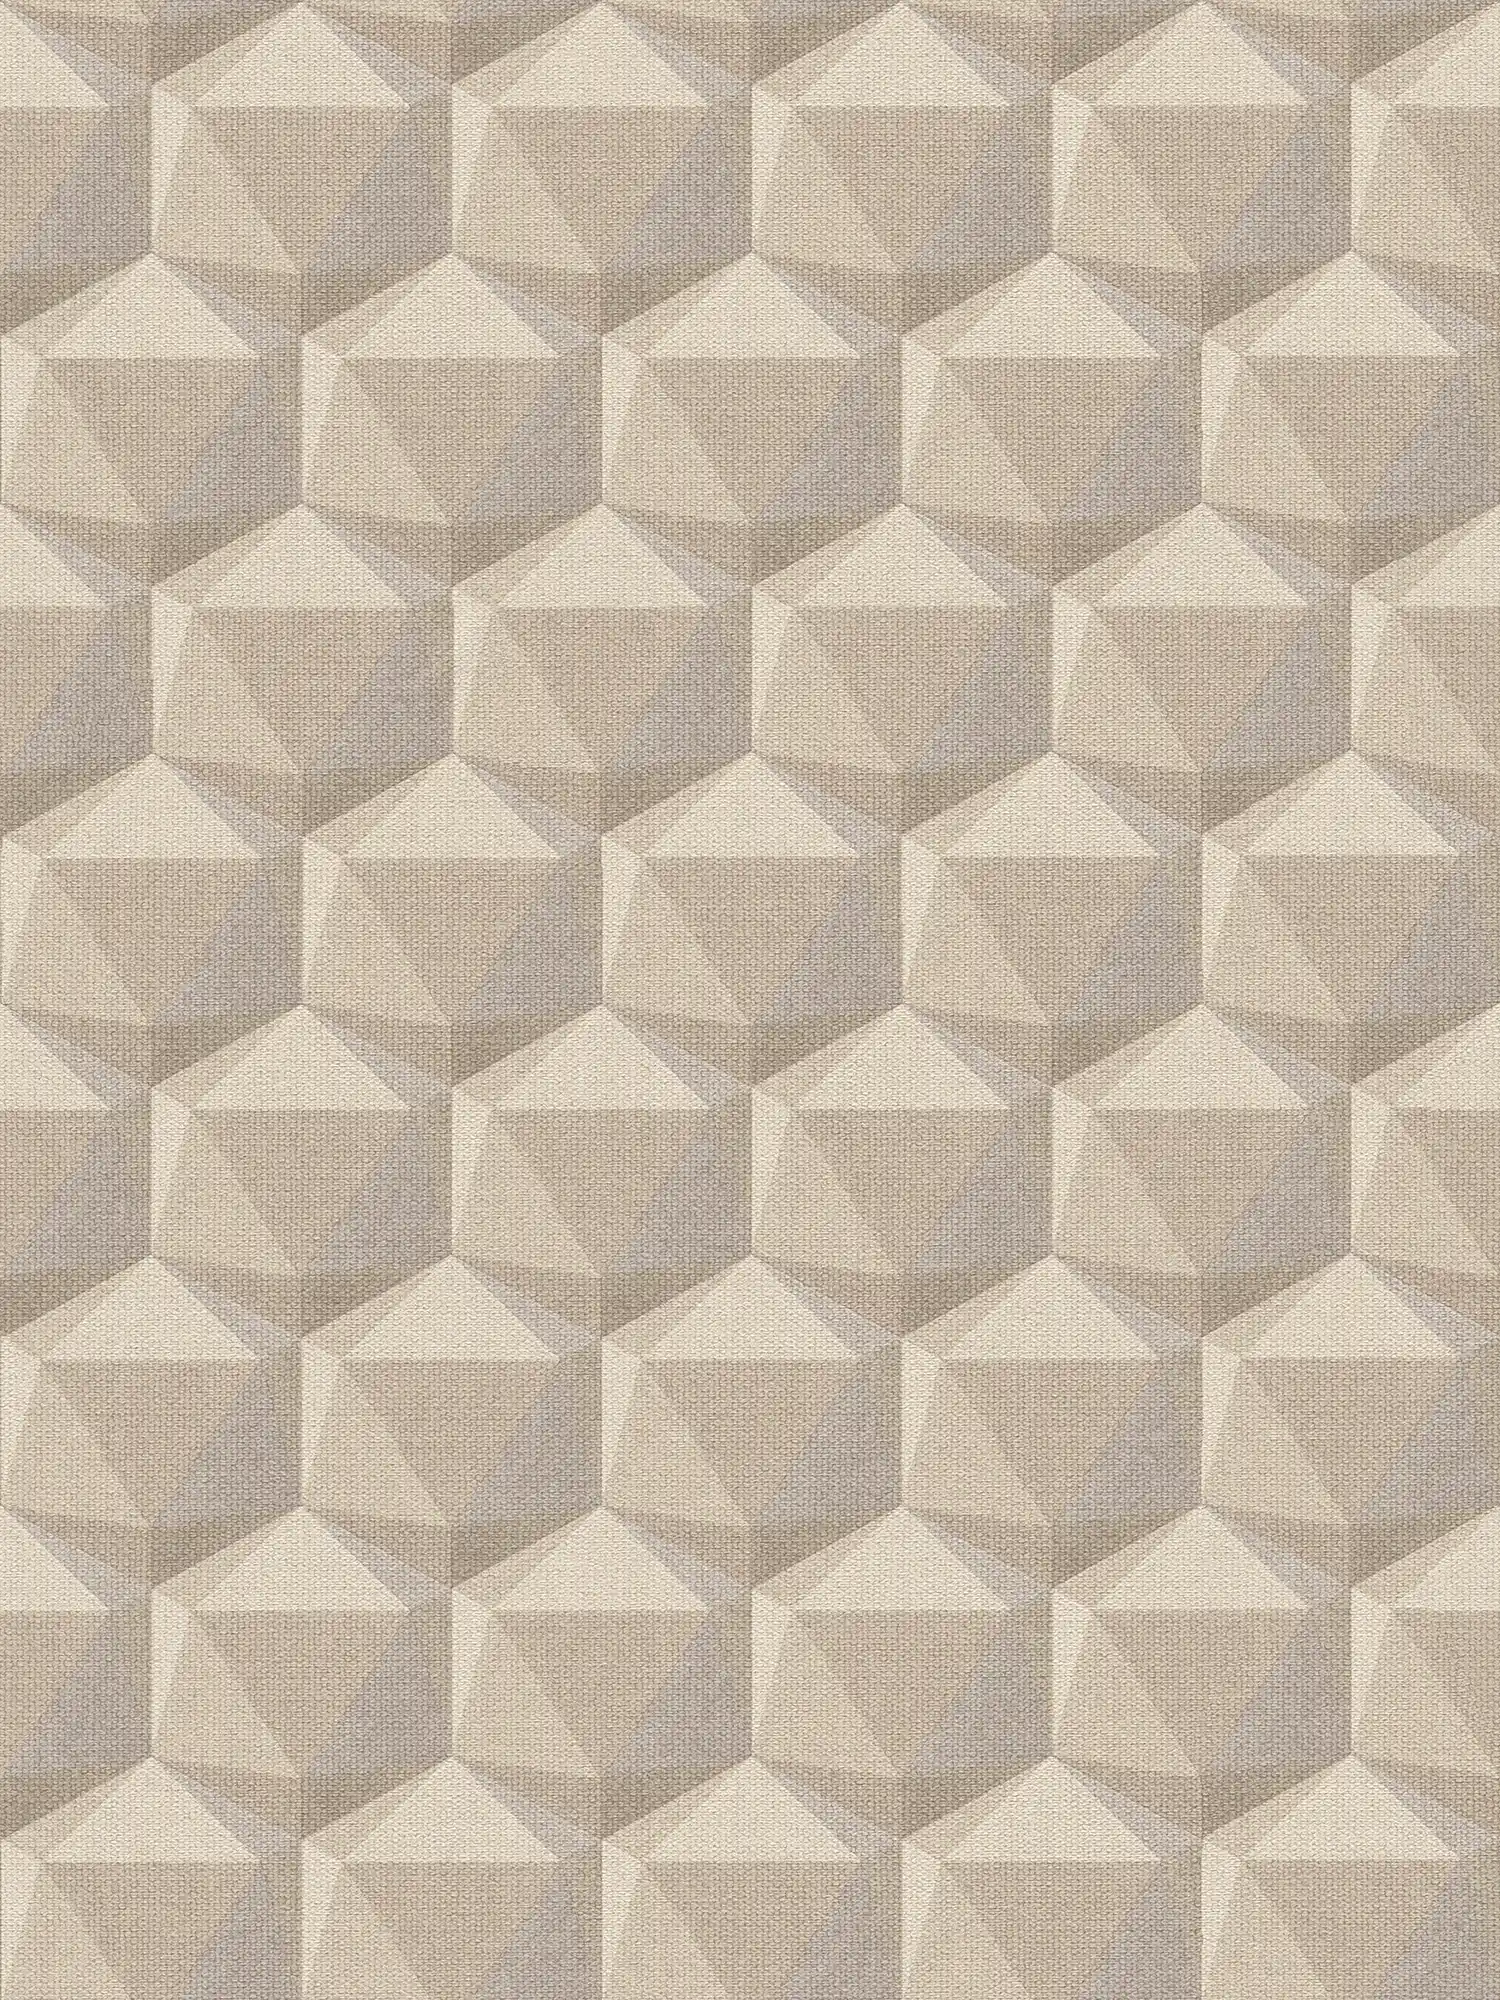 Papel pintado con diseño 3D y aspecto de lino - beige, gris
